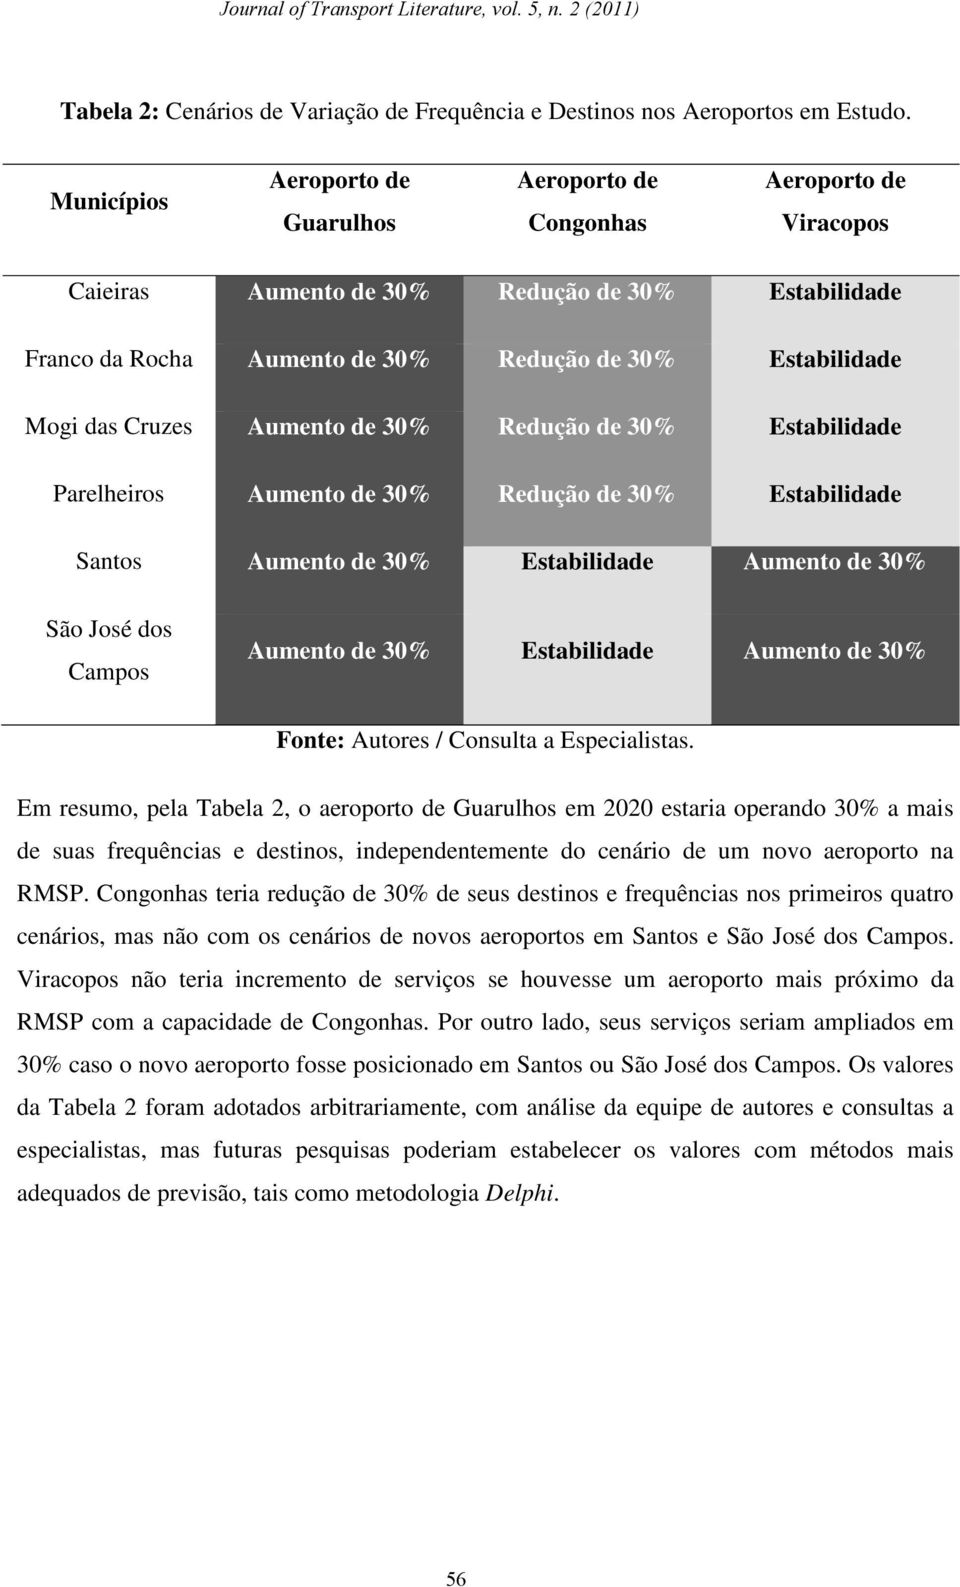 Cruzes Aumento de 30% Redução de 30% Estabilidade Parelheiros Aumento de 30% Redução de 30% Estabilidade Santos Aumento de 30% Estabilidade Aumento de 30% São José dos Campos Aumento de 30%